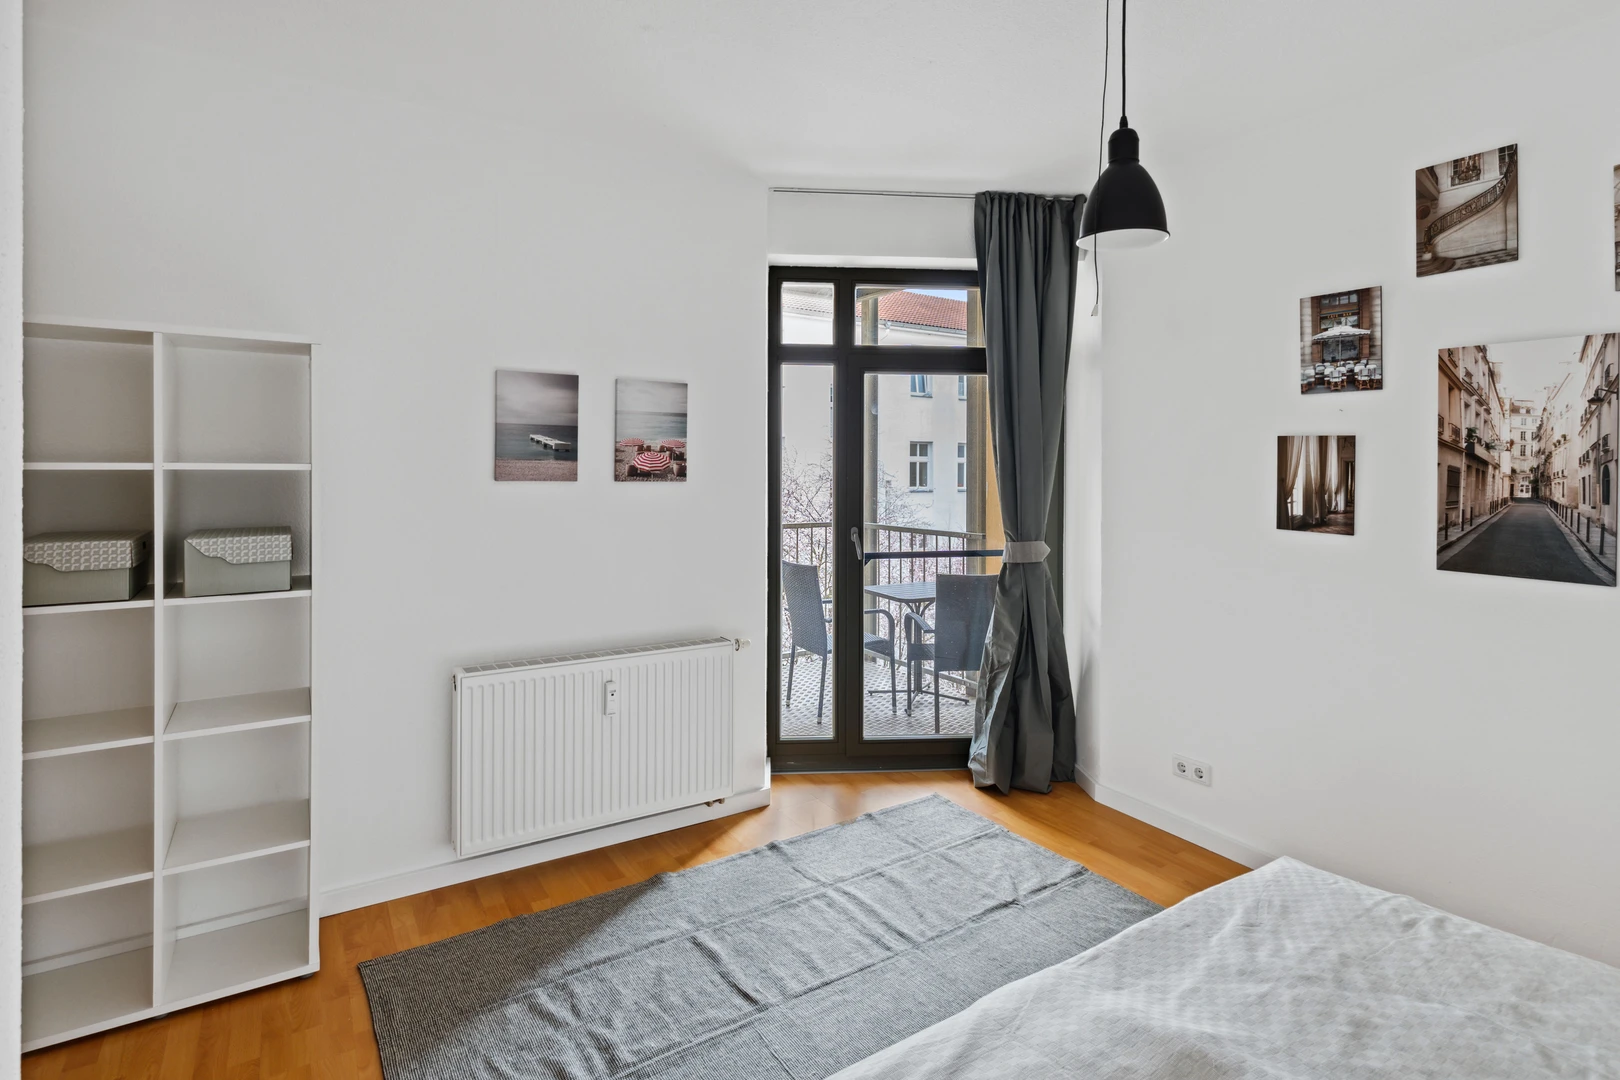 Magdeburg de çift kişilik yataklı kiralık oda